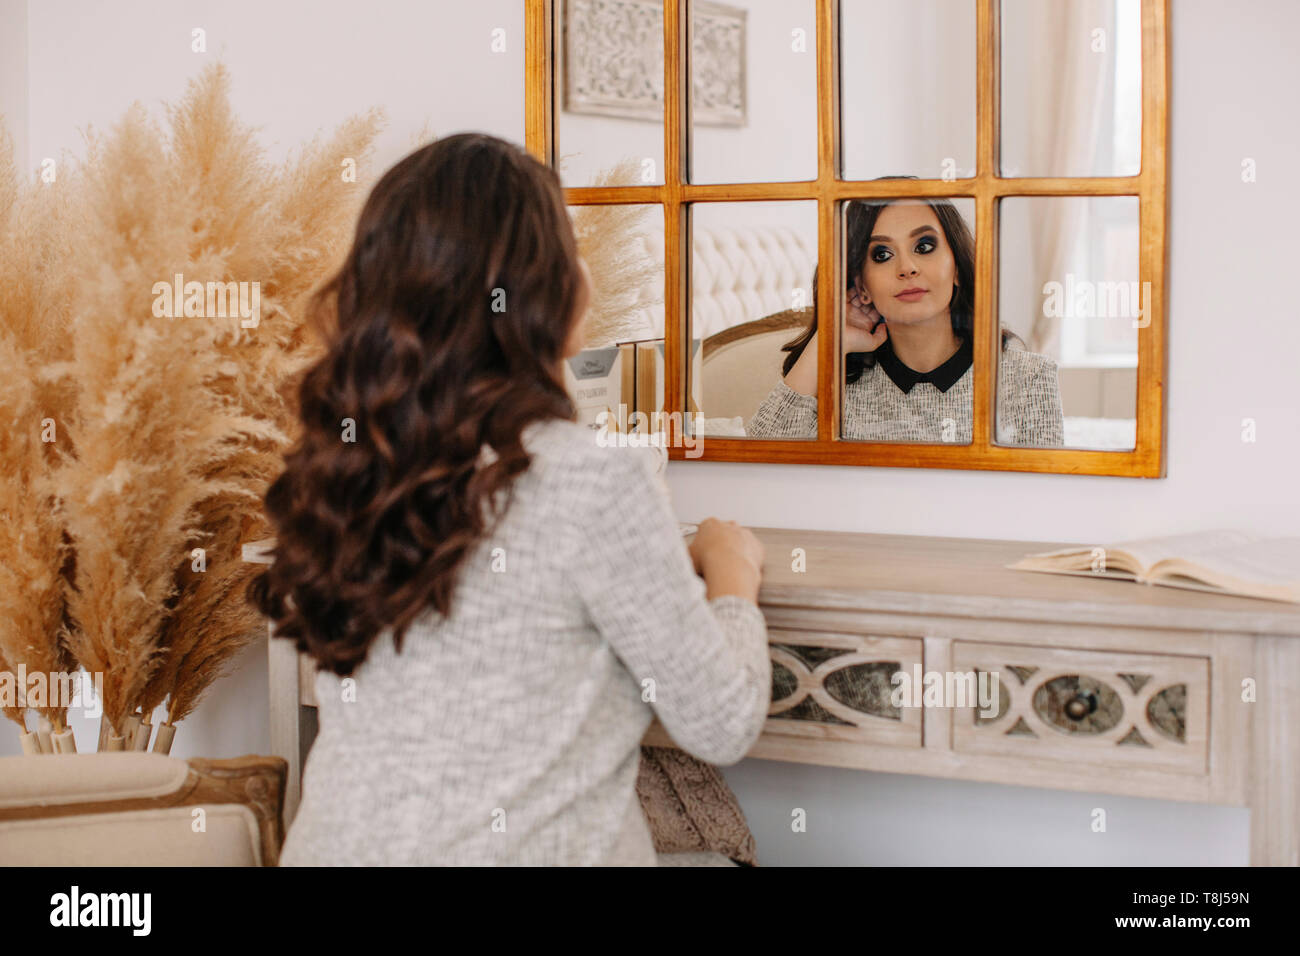 Porträt einer Frau, die in einem Spiegel zu betrachten Stockfoto